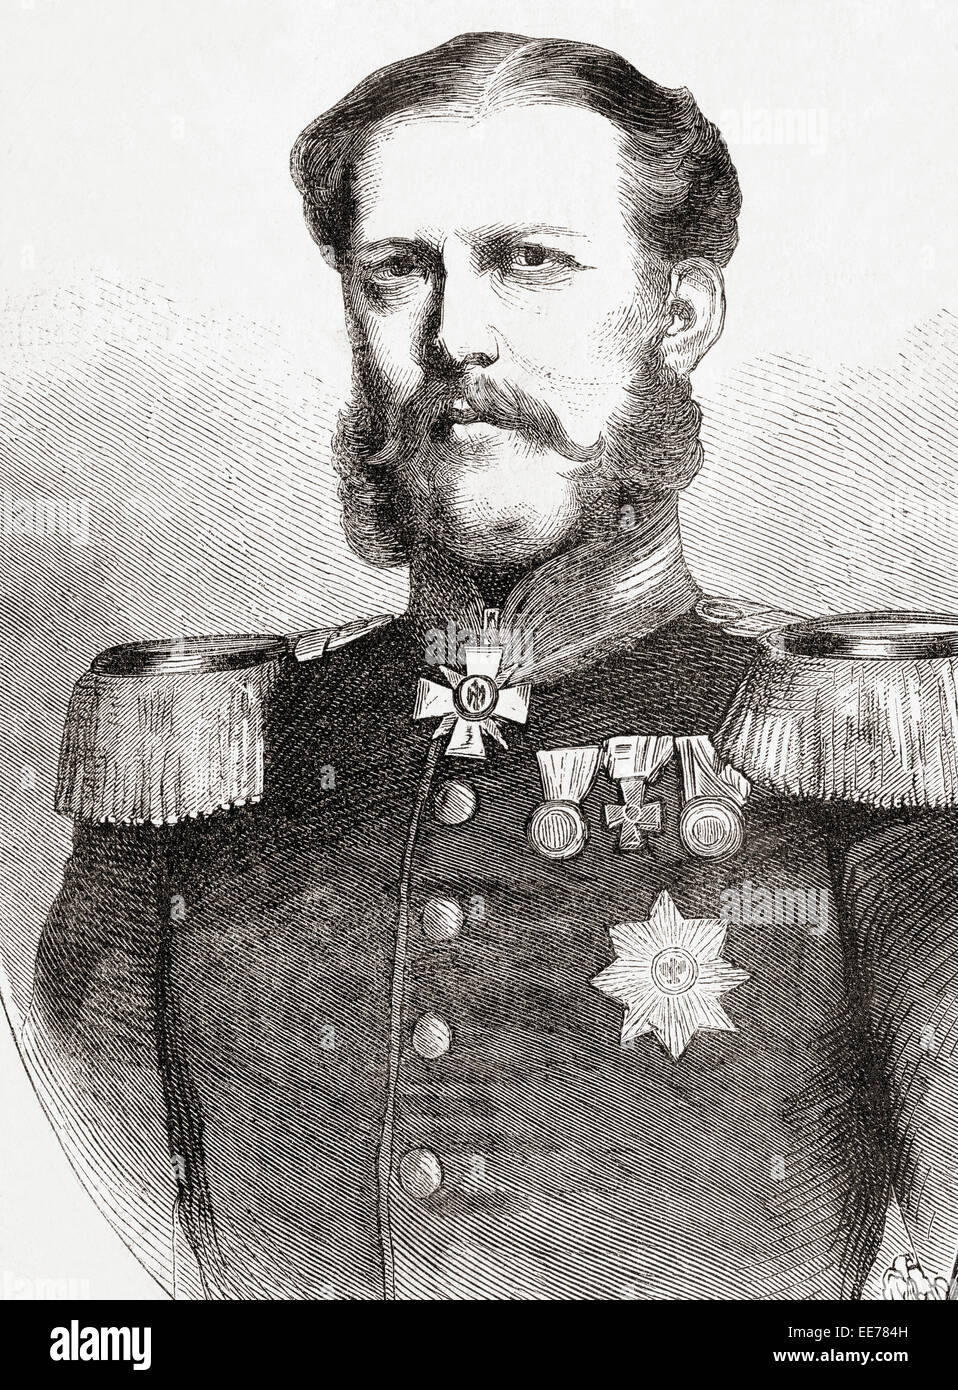 Duke William or Willem of Mecklenburg-Schwerin, 1827 - 1879. Stock Photo